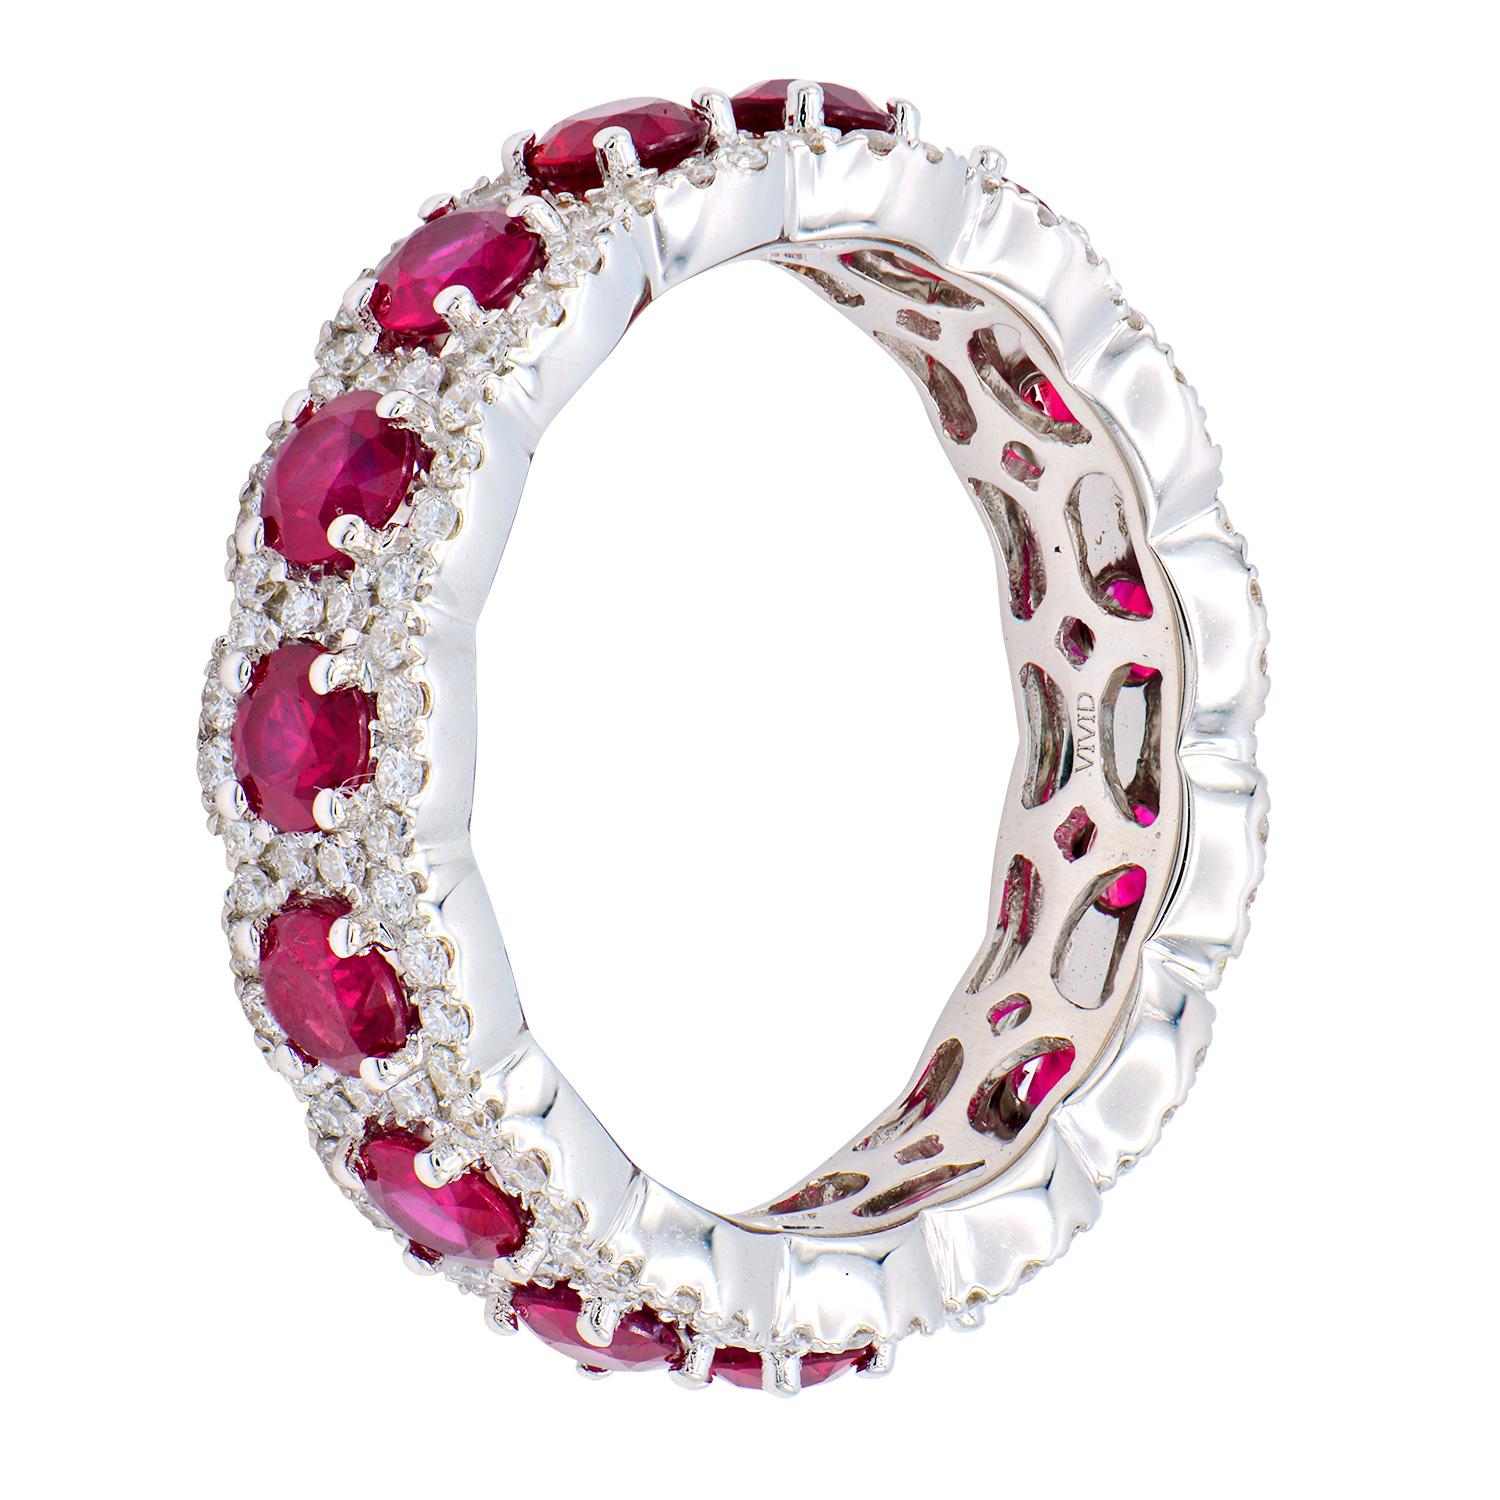 Ce bracelet d'éternité en rubis et diamants est un cercle complet de beauté et d'élégance. Ce bracelet contient 15 rubis rouges profonds totalisant 2,57 carats, entourés de 150 diamants ronds de couleur VS2, G, totalisant 0,66 carats. Ils sont